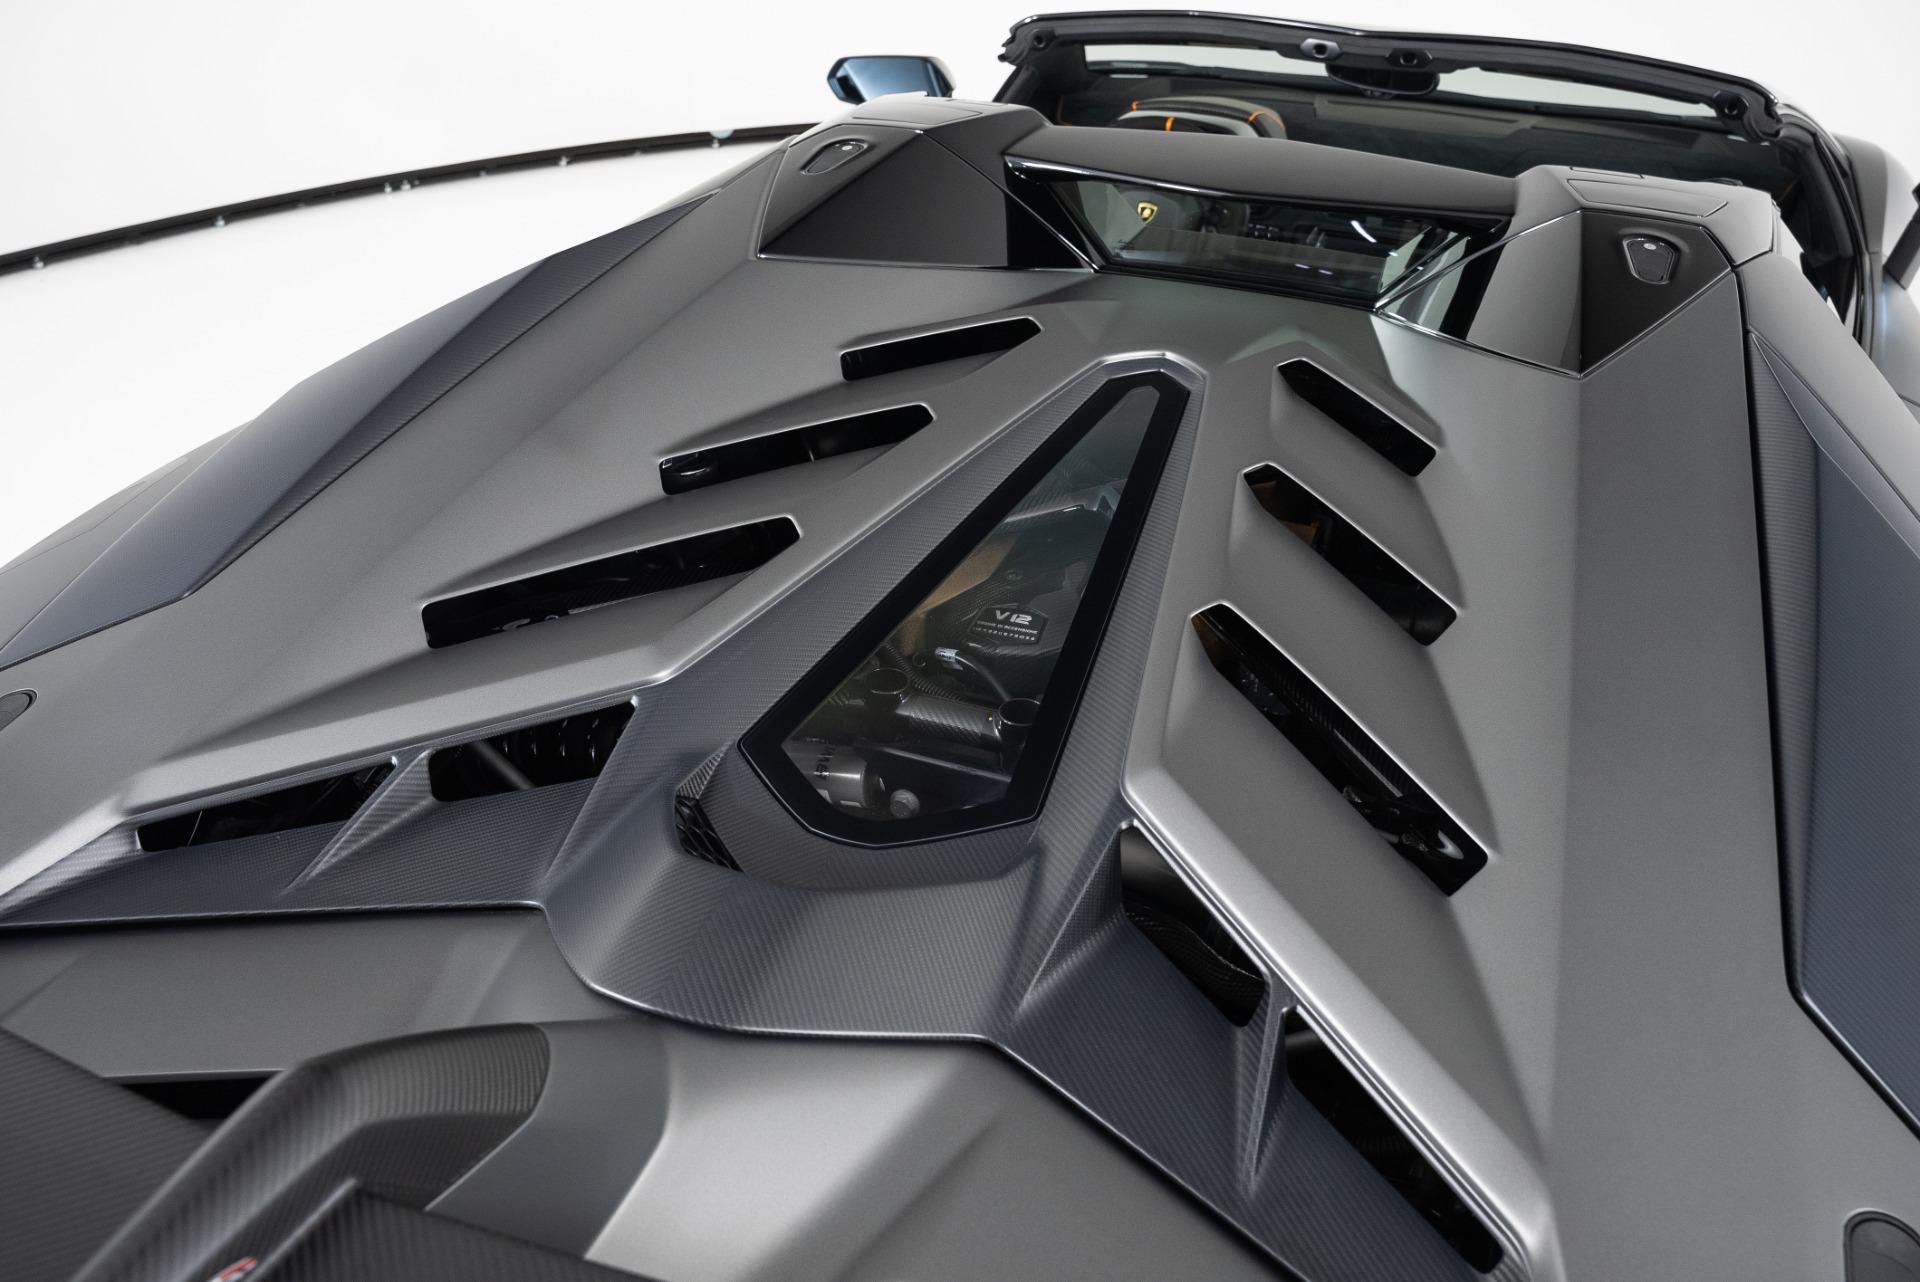 Used 2020 Lamborghini Aventador SVJ For Sale (Sold) | West Coast 